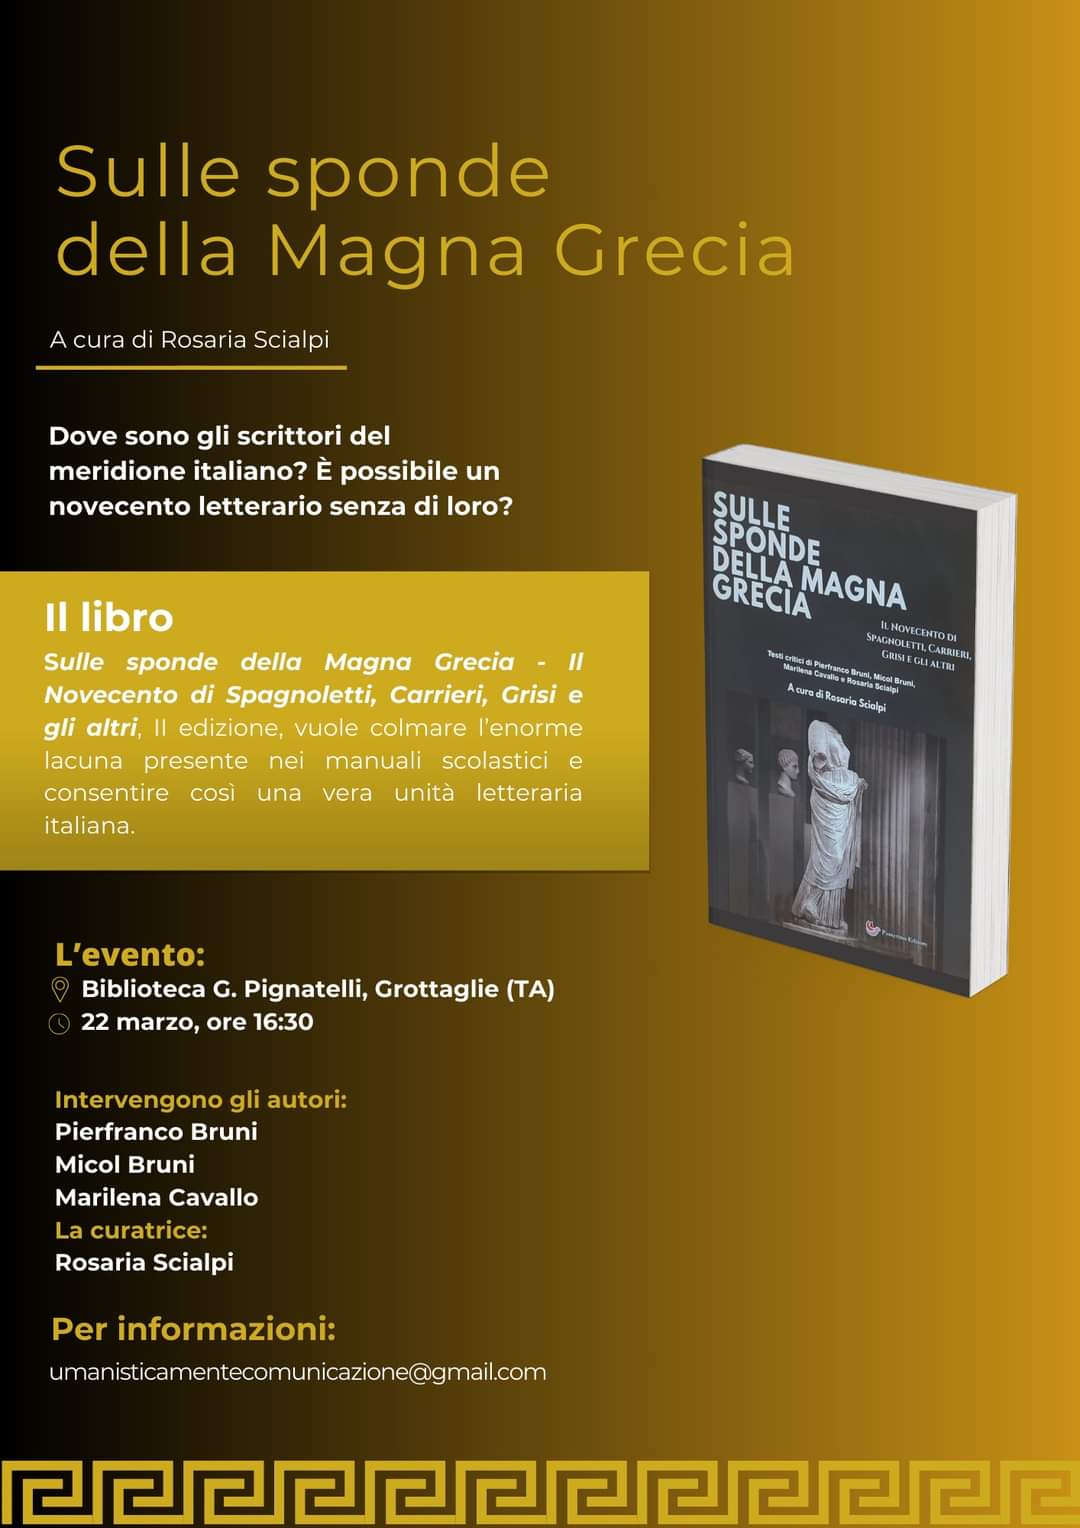 Sulle sponde della Magna Grecia: presentazione a Grottaglie del saggio che apre a nuovi percorsi di studio sulla letteratura del Novecento